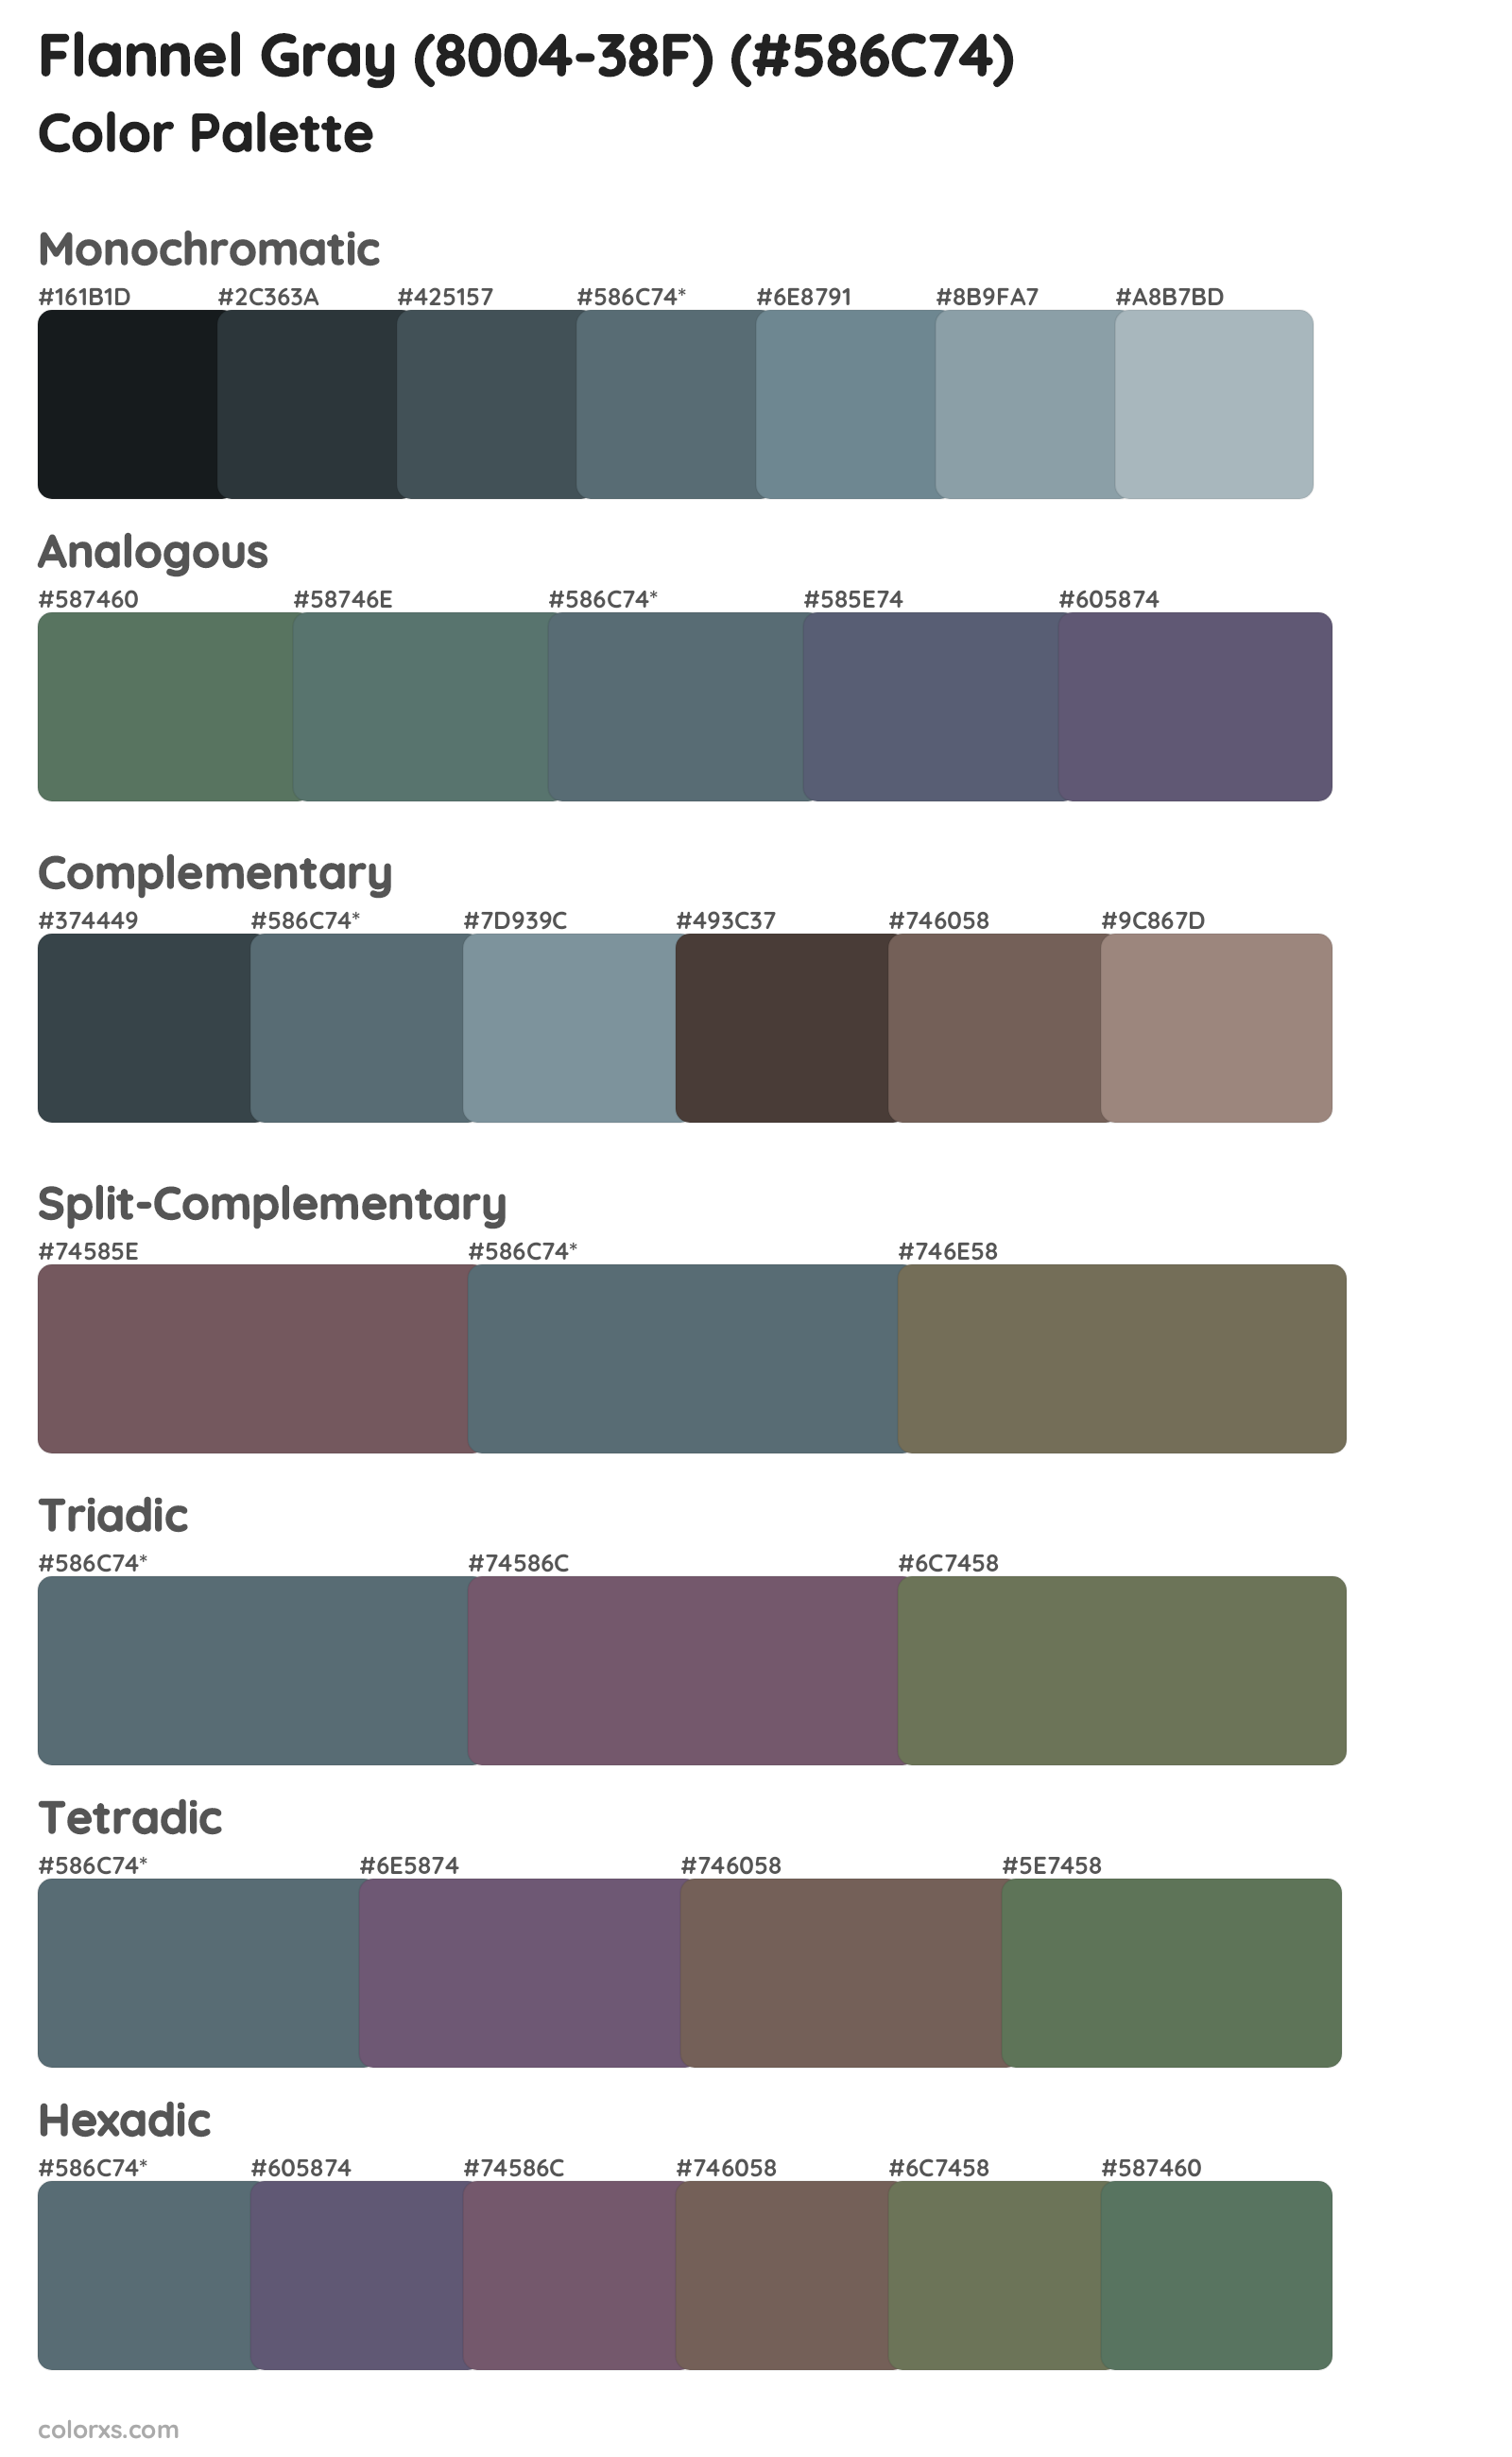 Flannel Gray (8004-38F) Color Scheme Palettes